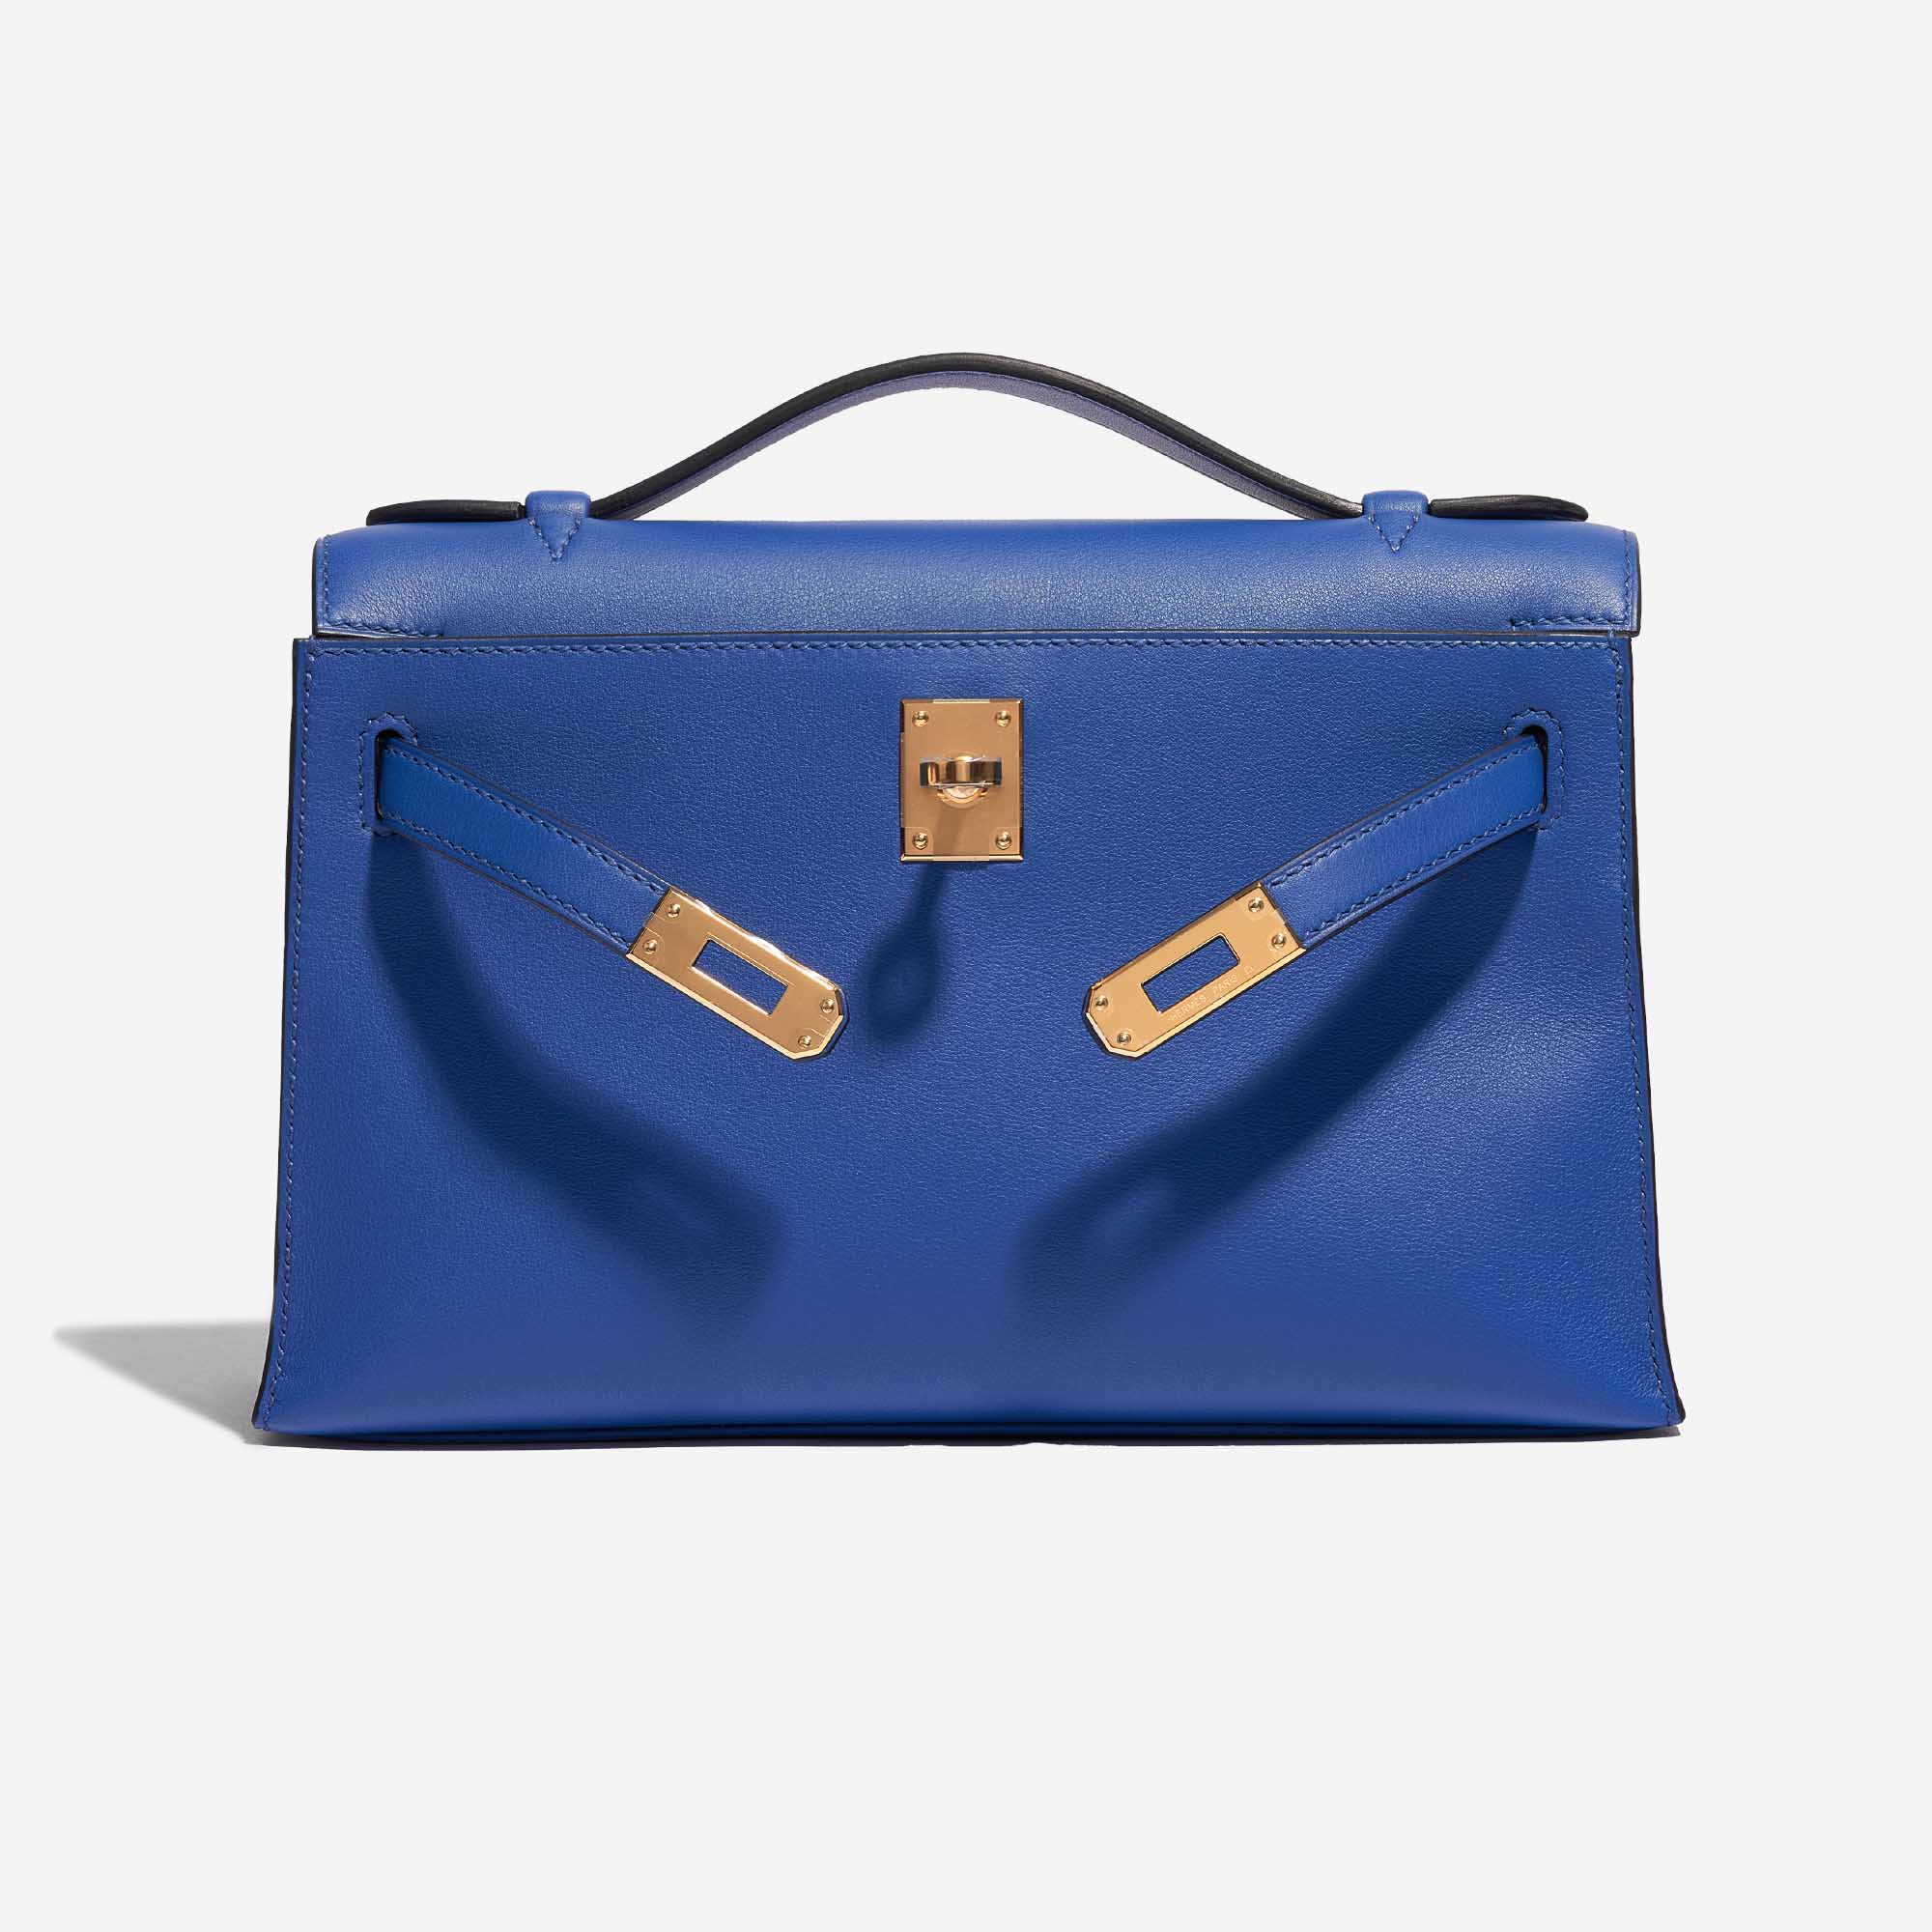 Pre-owned Hermès bag Kelly Pochette Swift Blue de France Blue Front Open | Sell your designer bag on Saclab.com